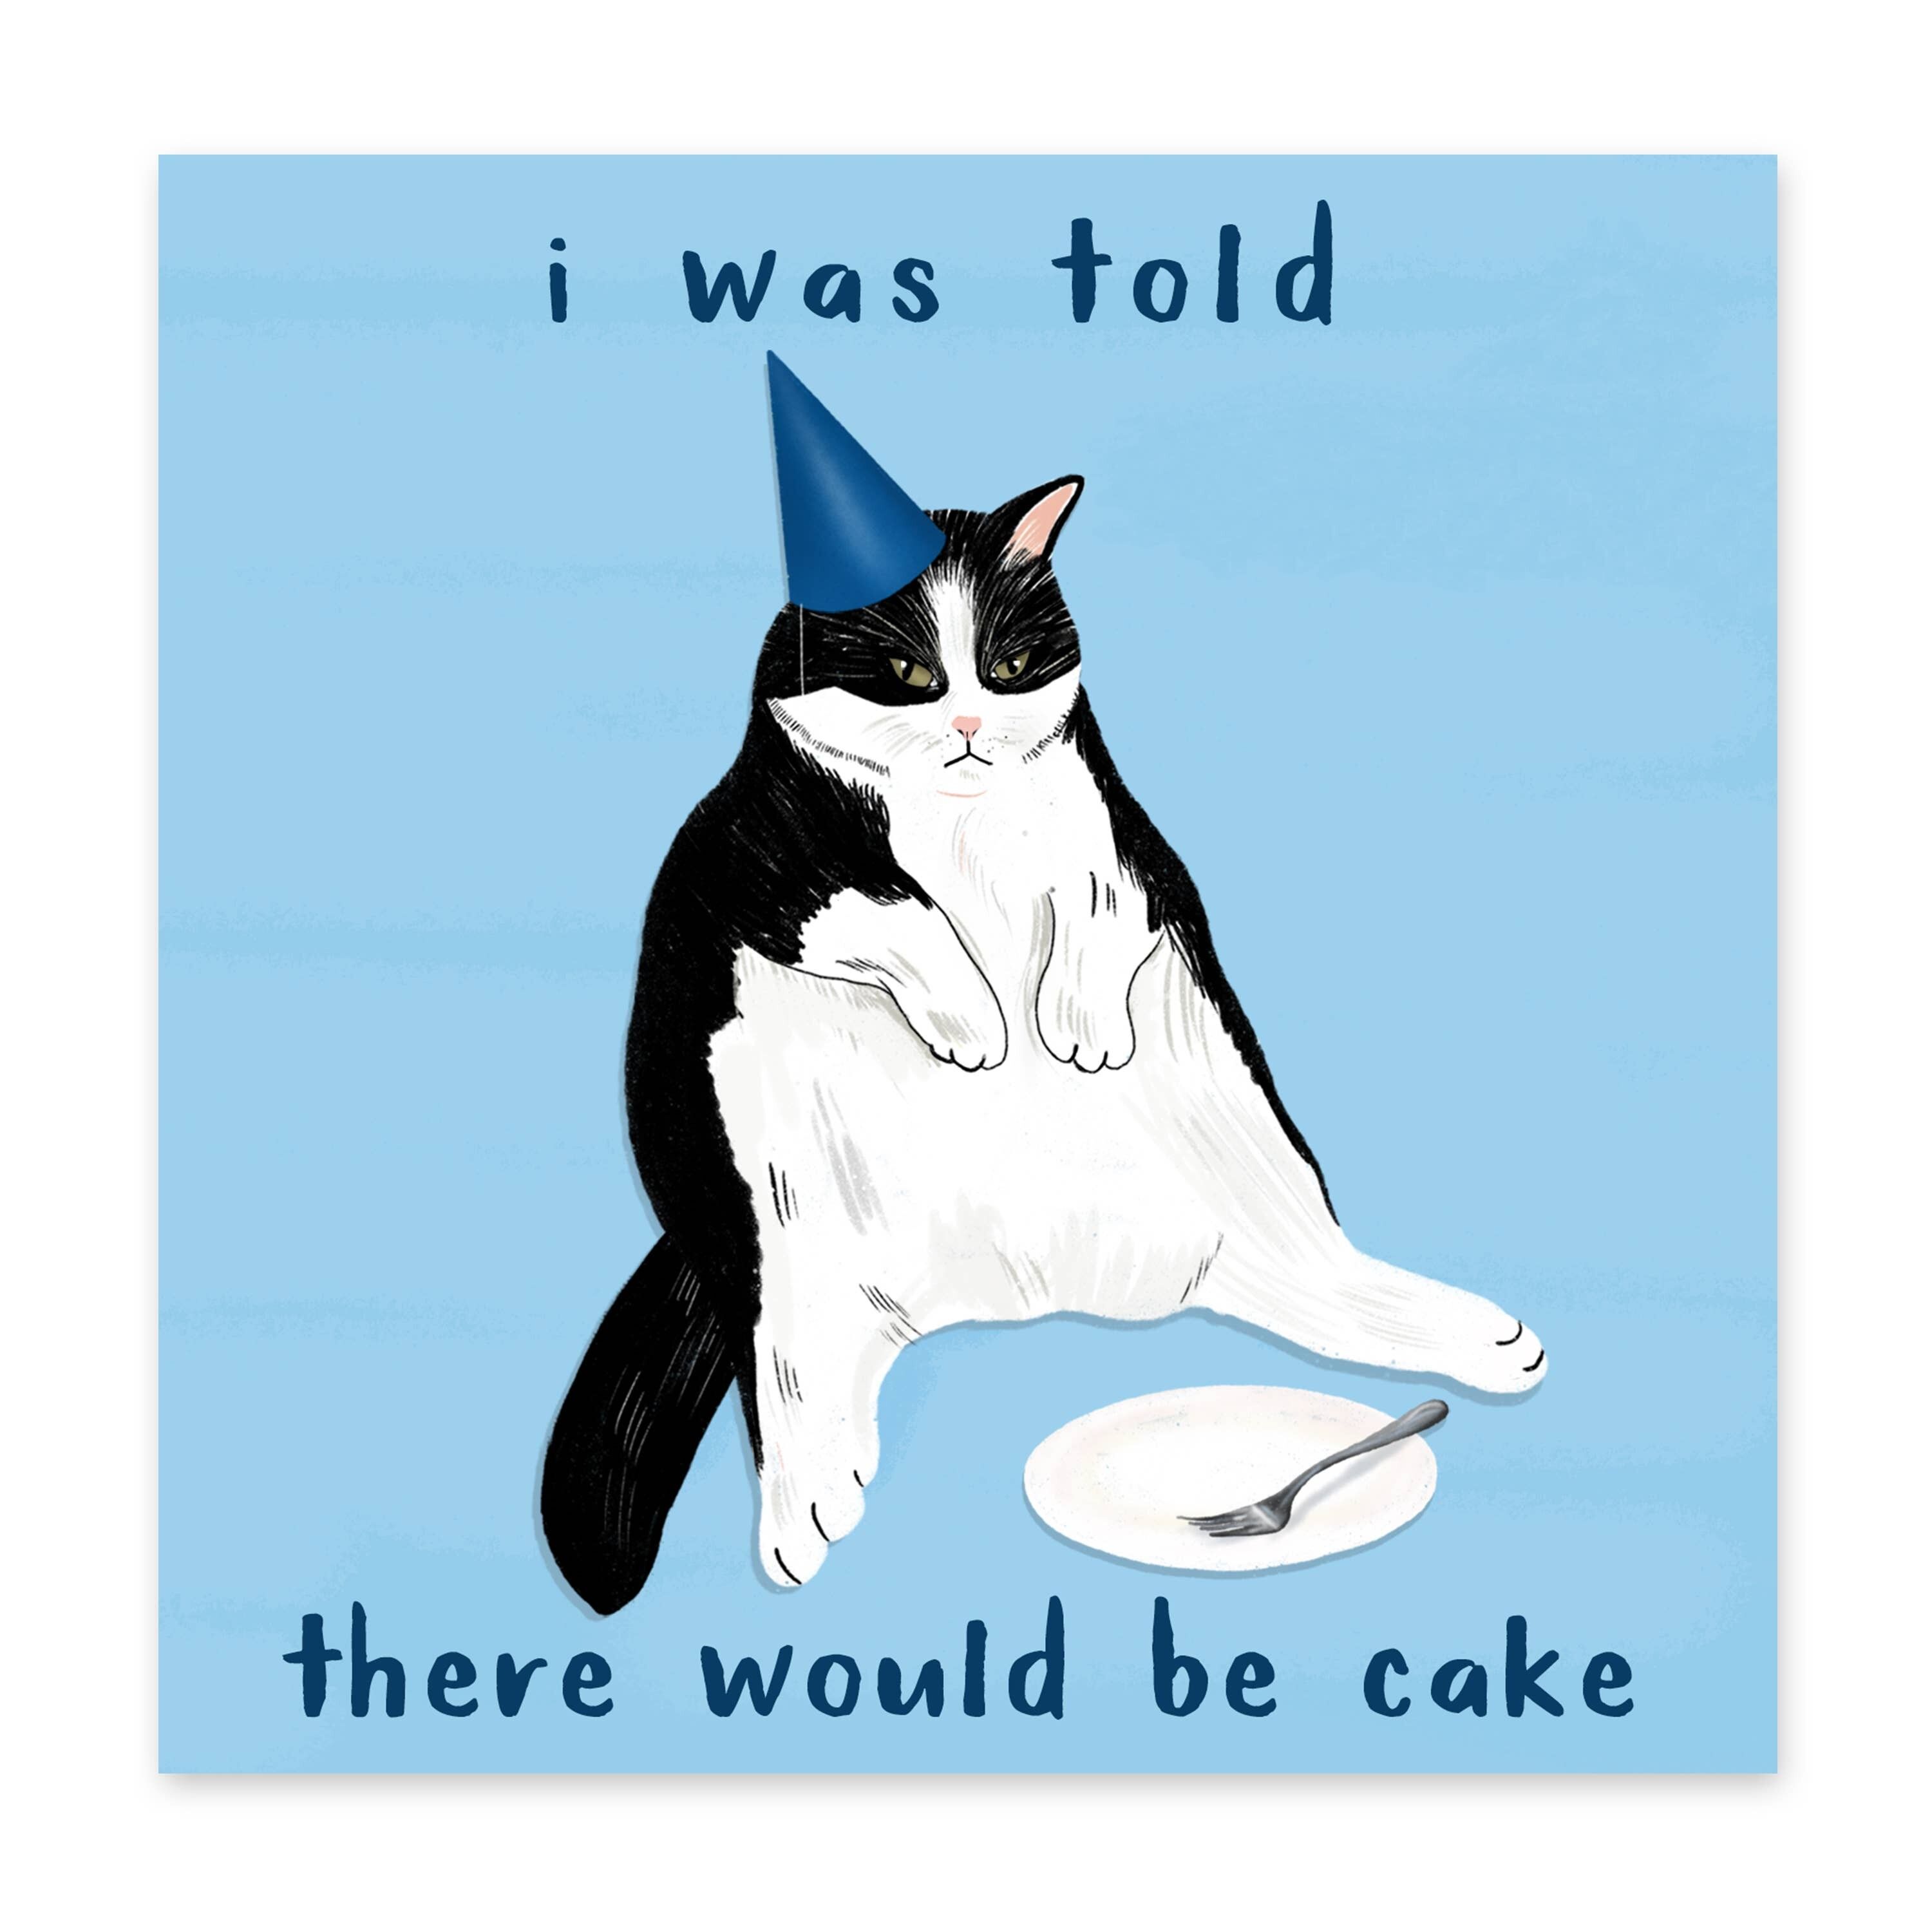 On m'a dit qu'il y aurait une carte de gâteau